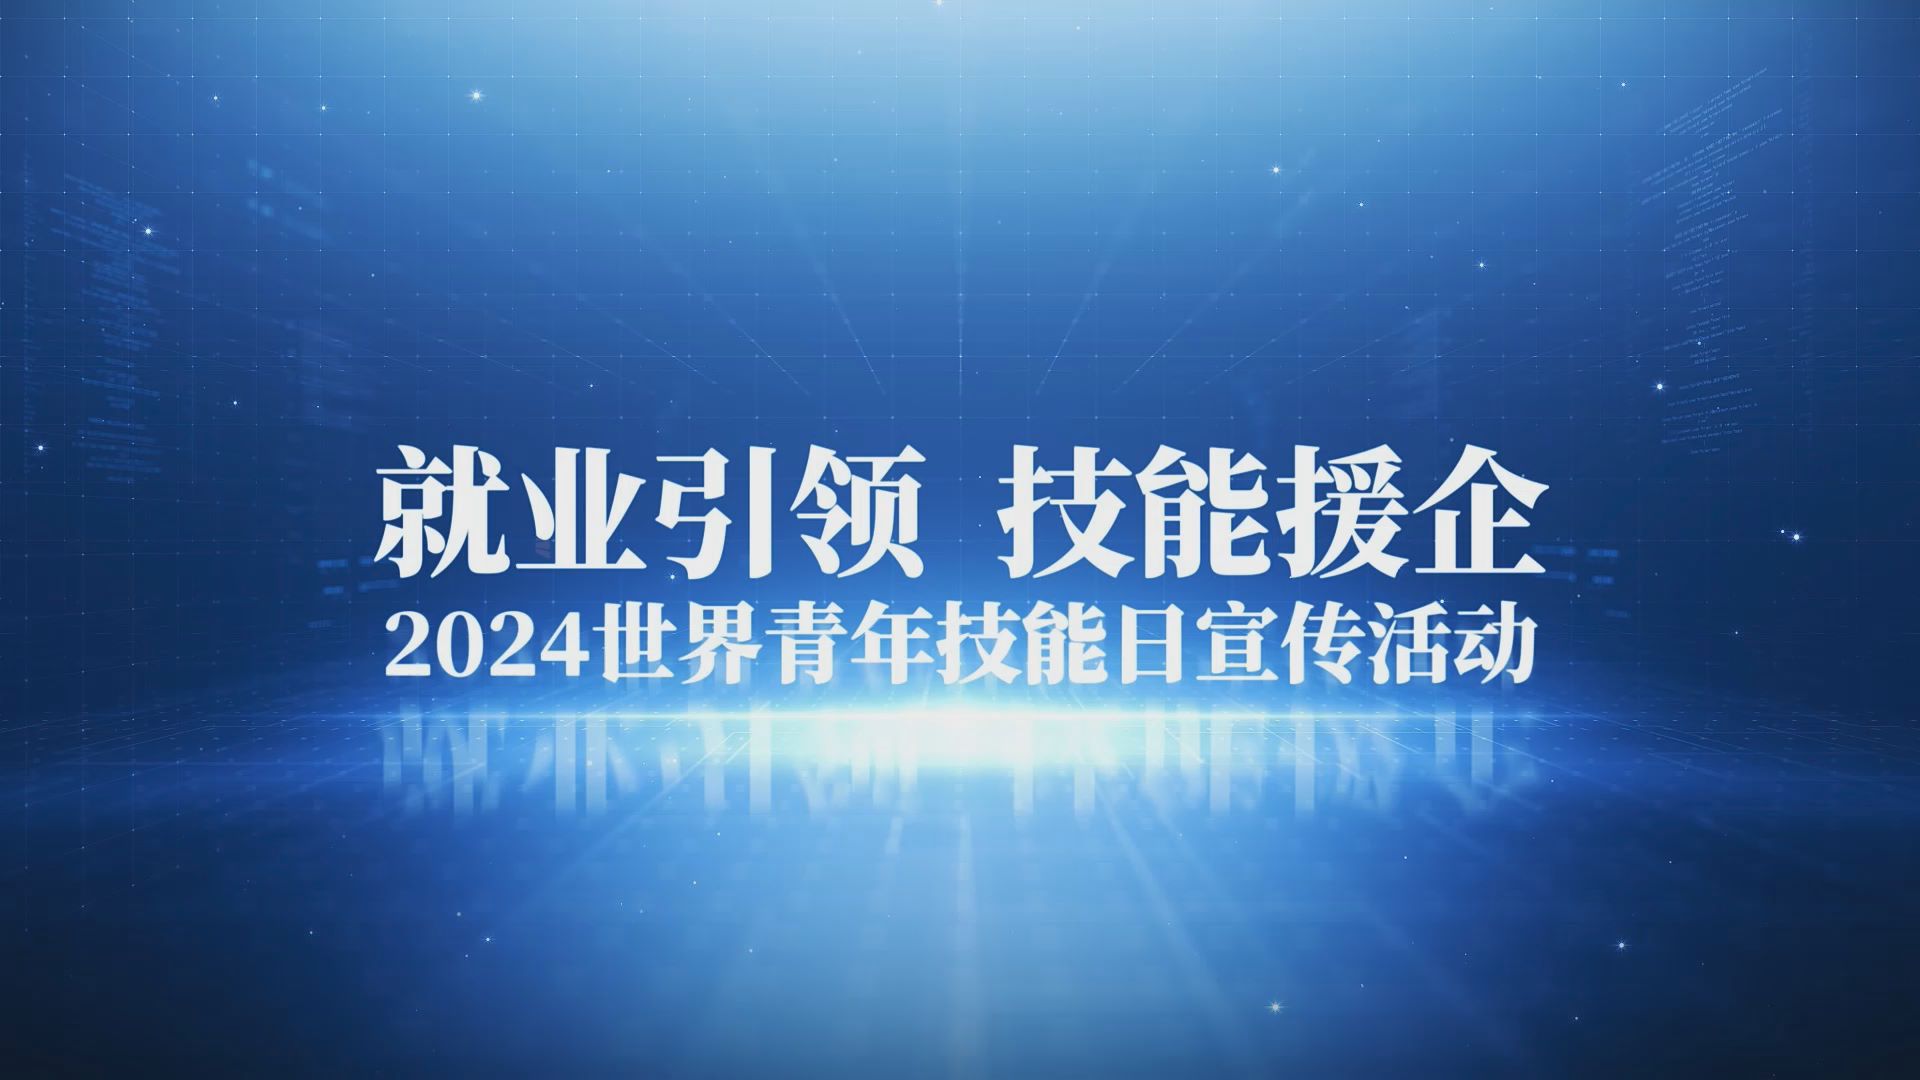 陕西举办2024年世界青年技能日宣传活动